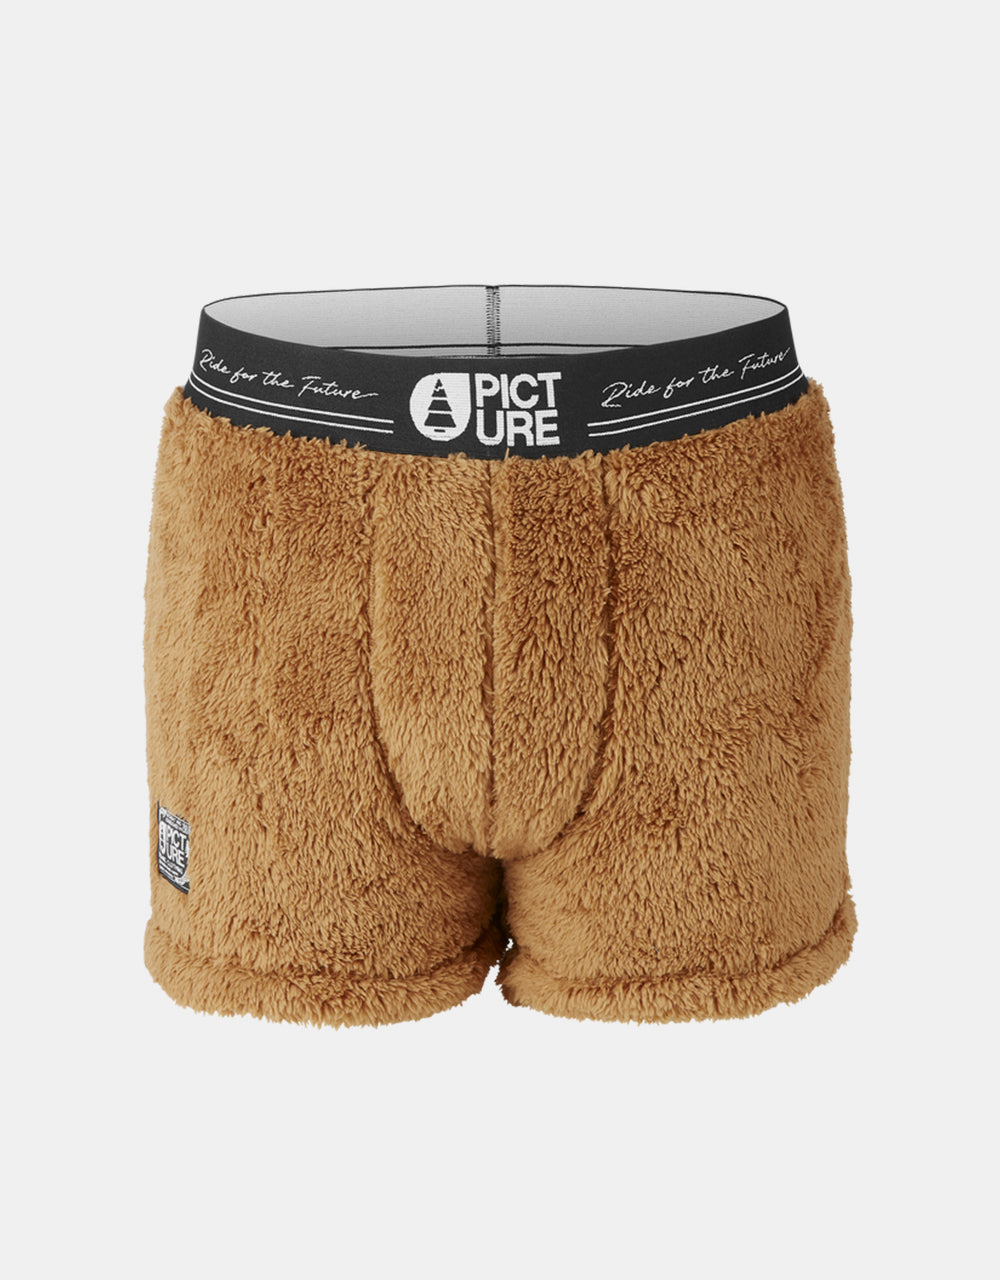 Picture Fleece Boxer Shorts - Poilstrusse